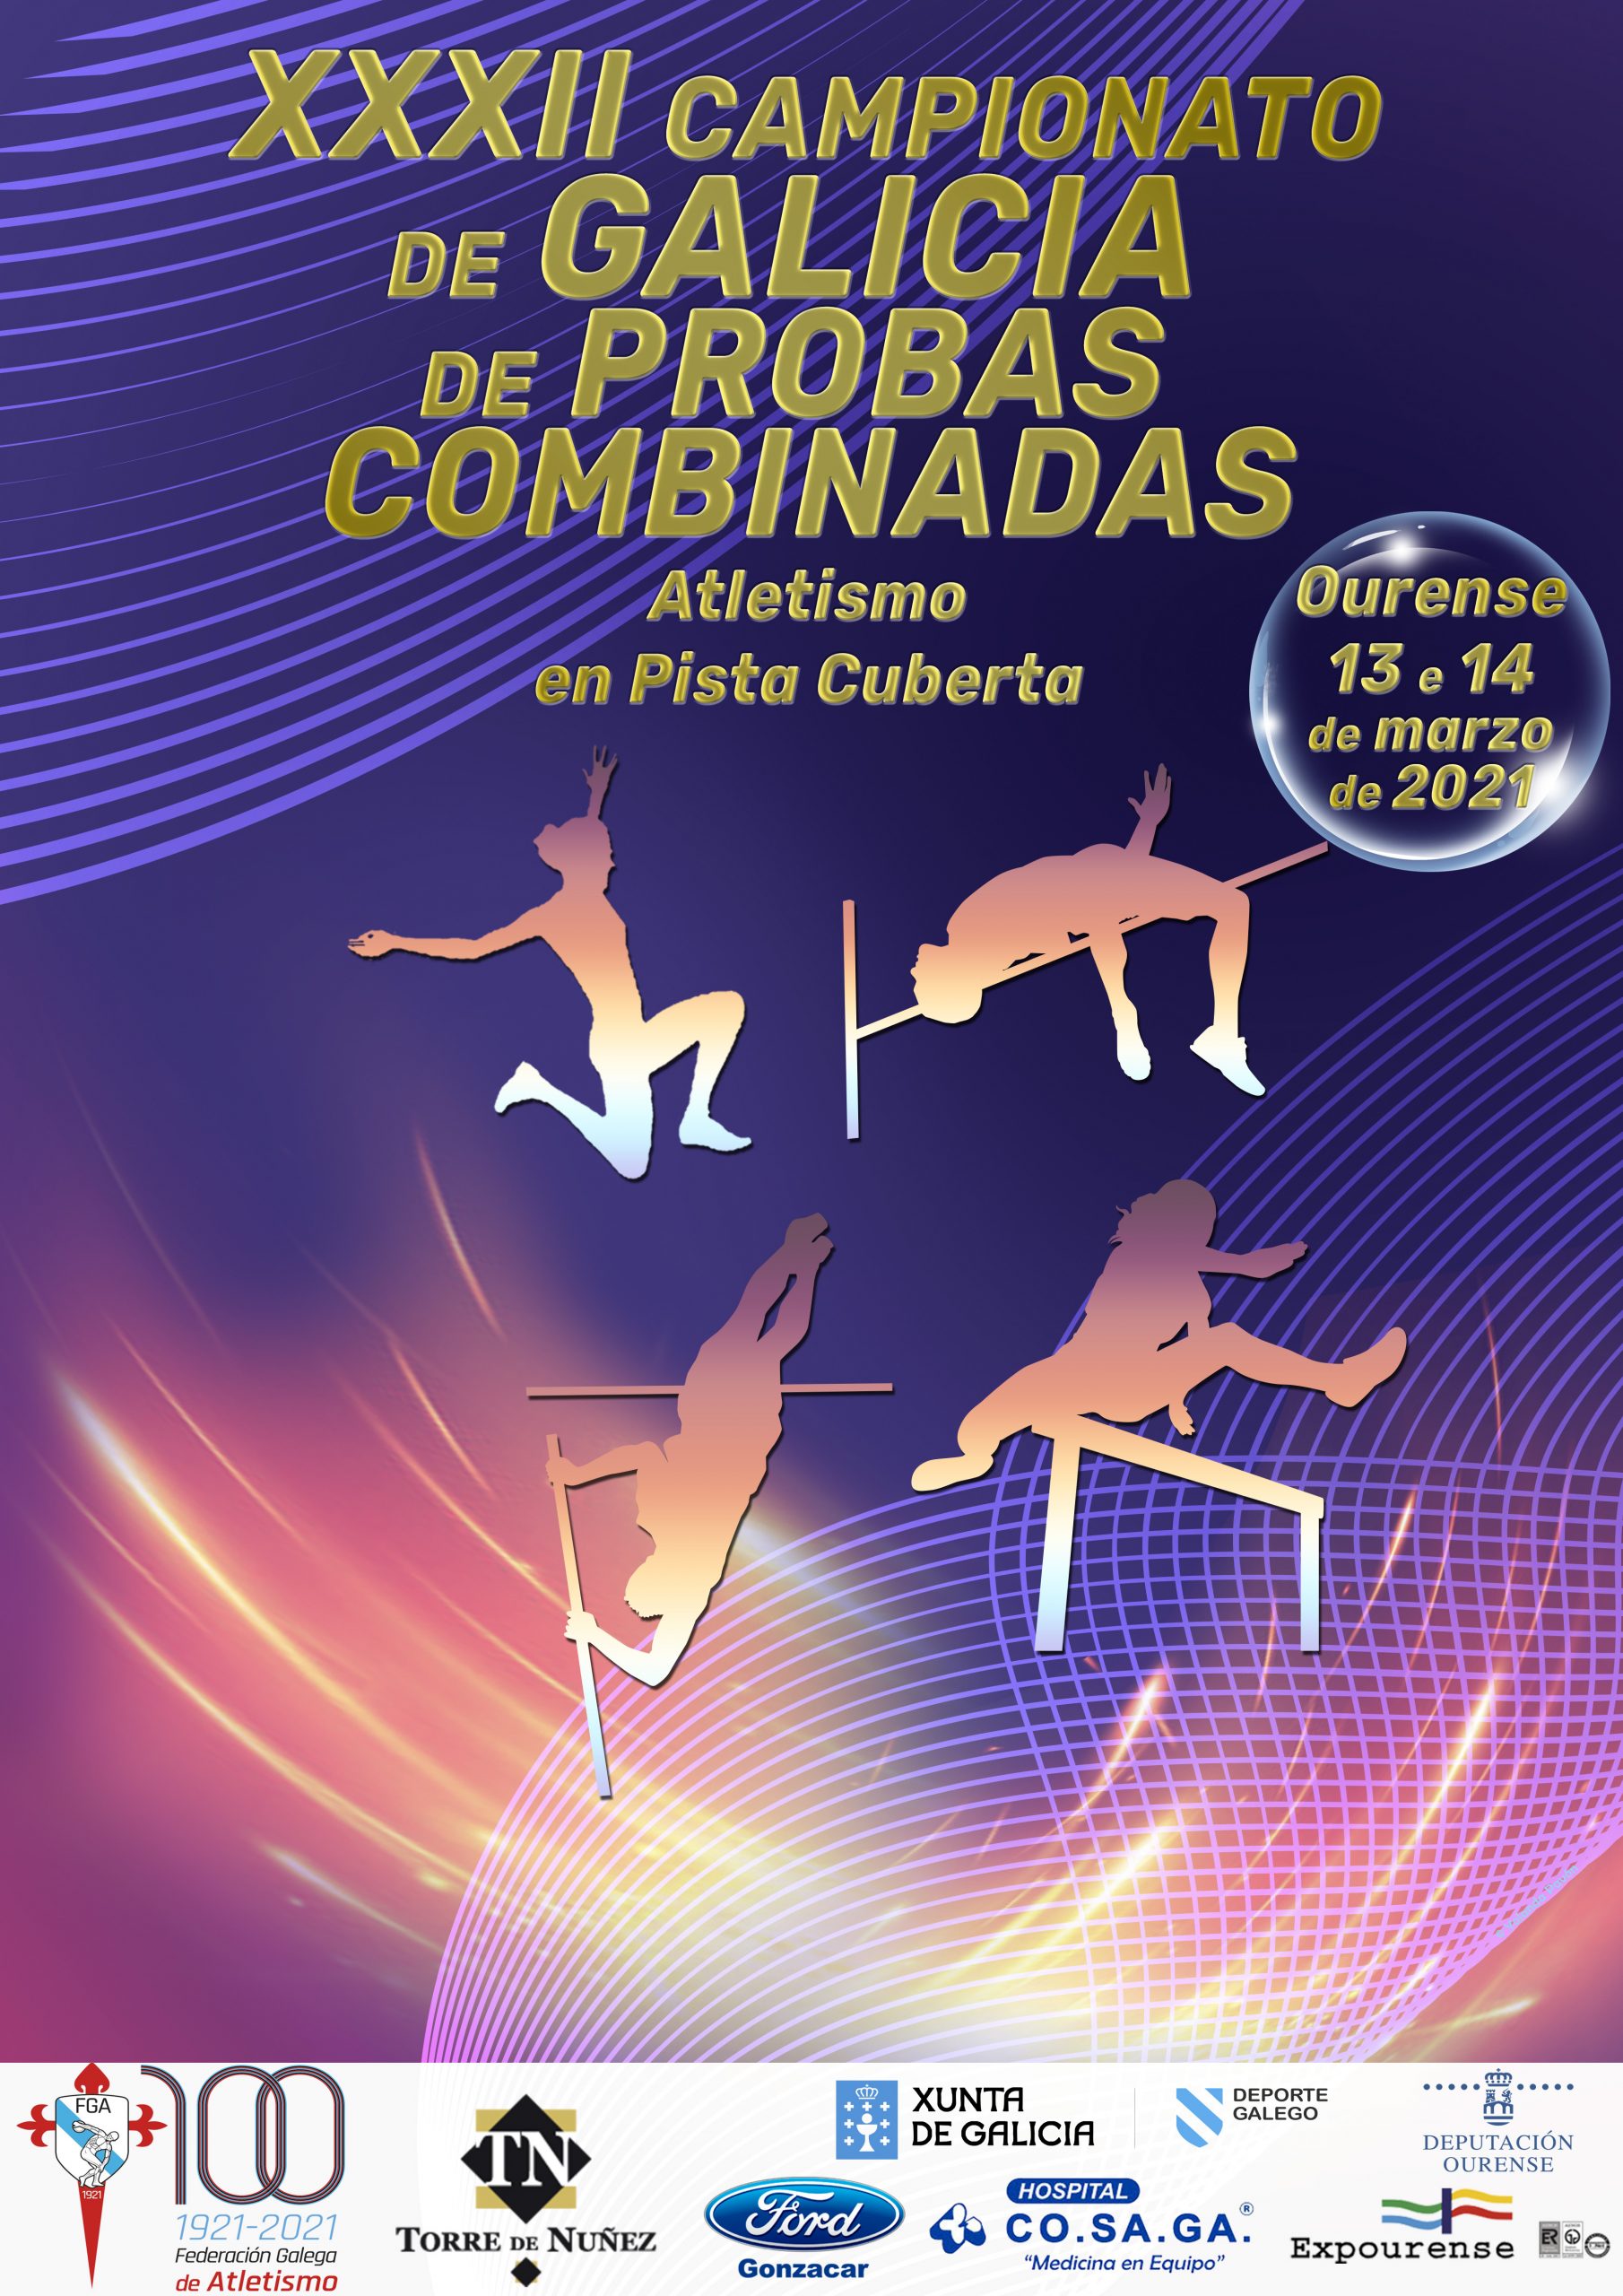 XXXII Campionato de Galicia de Probas Combinadas en Pista Cuberta